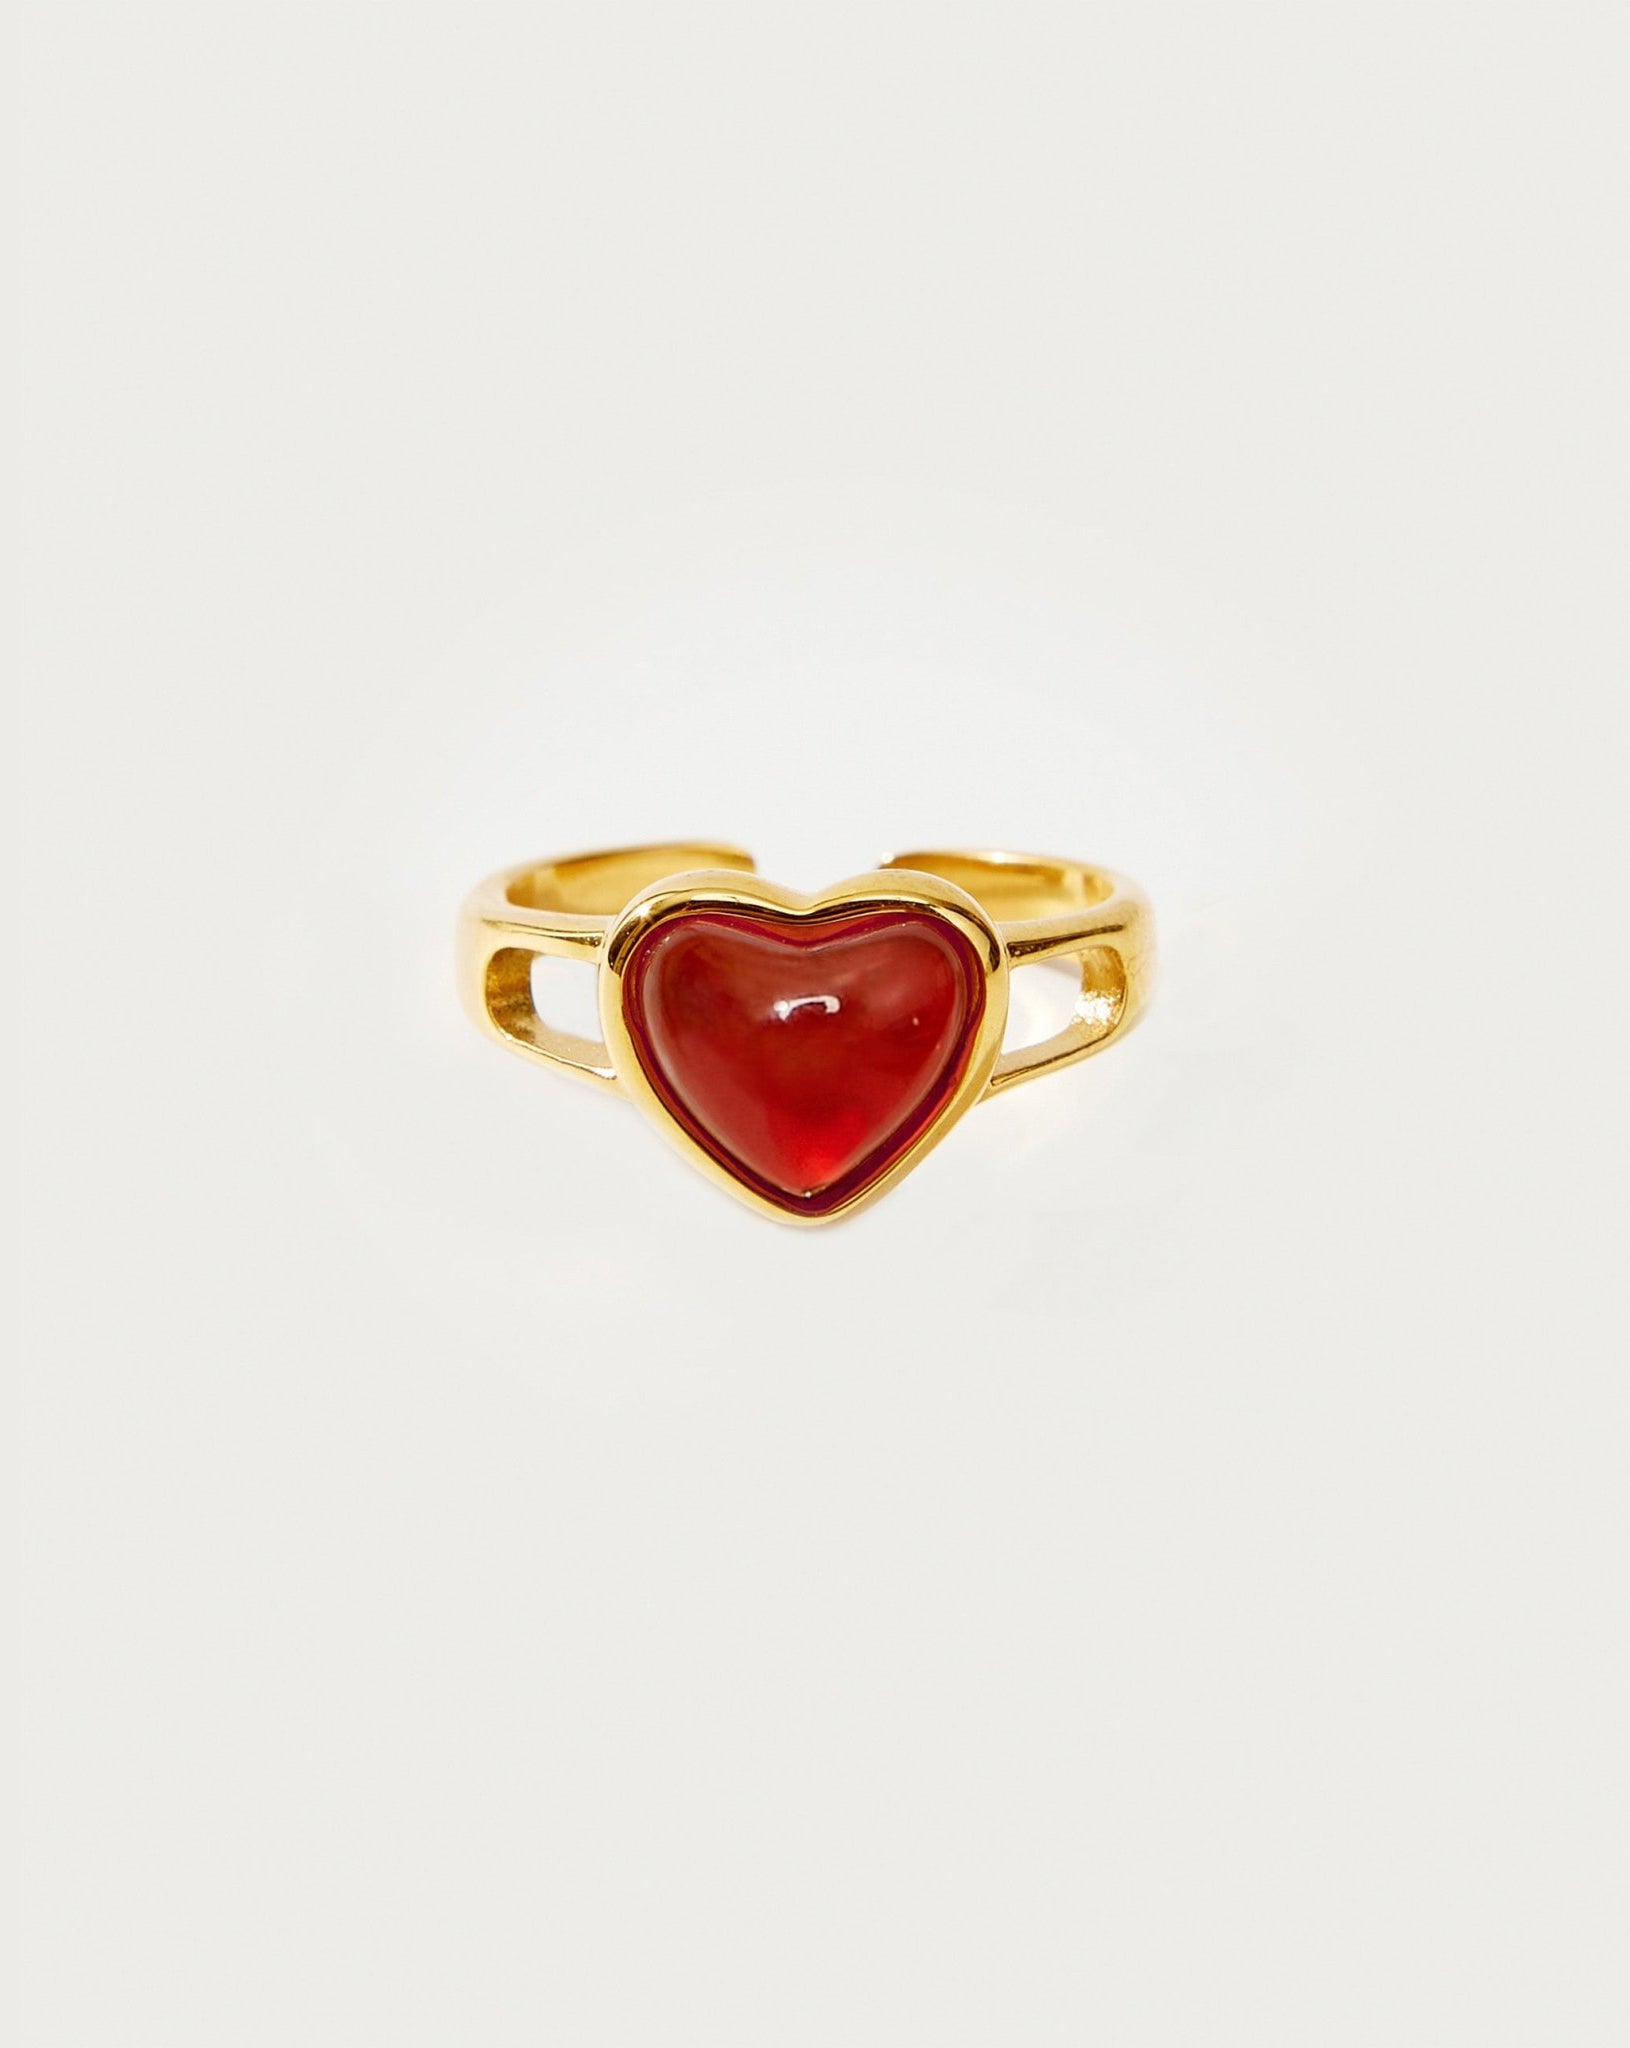 Carnelian Heart Ring in Silver